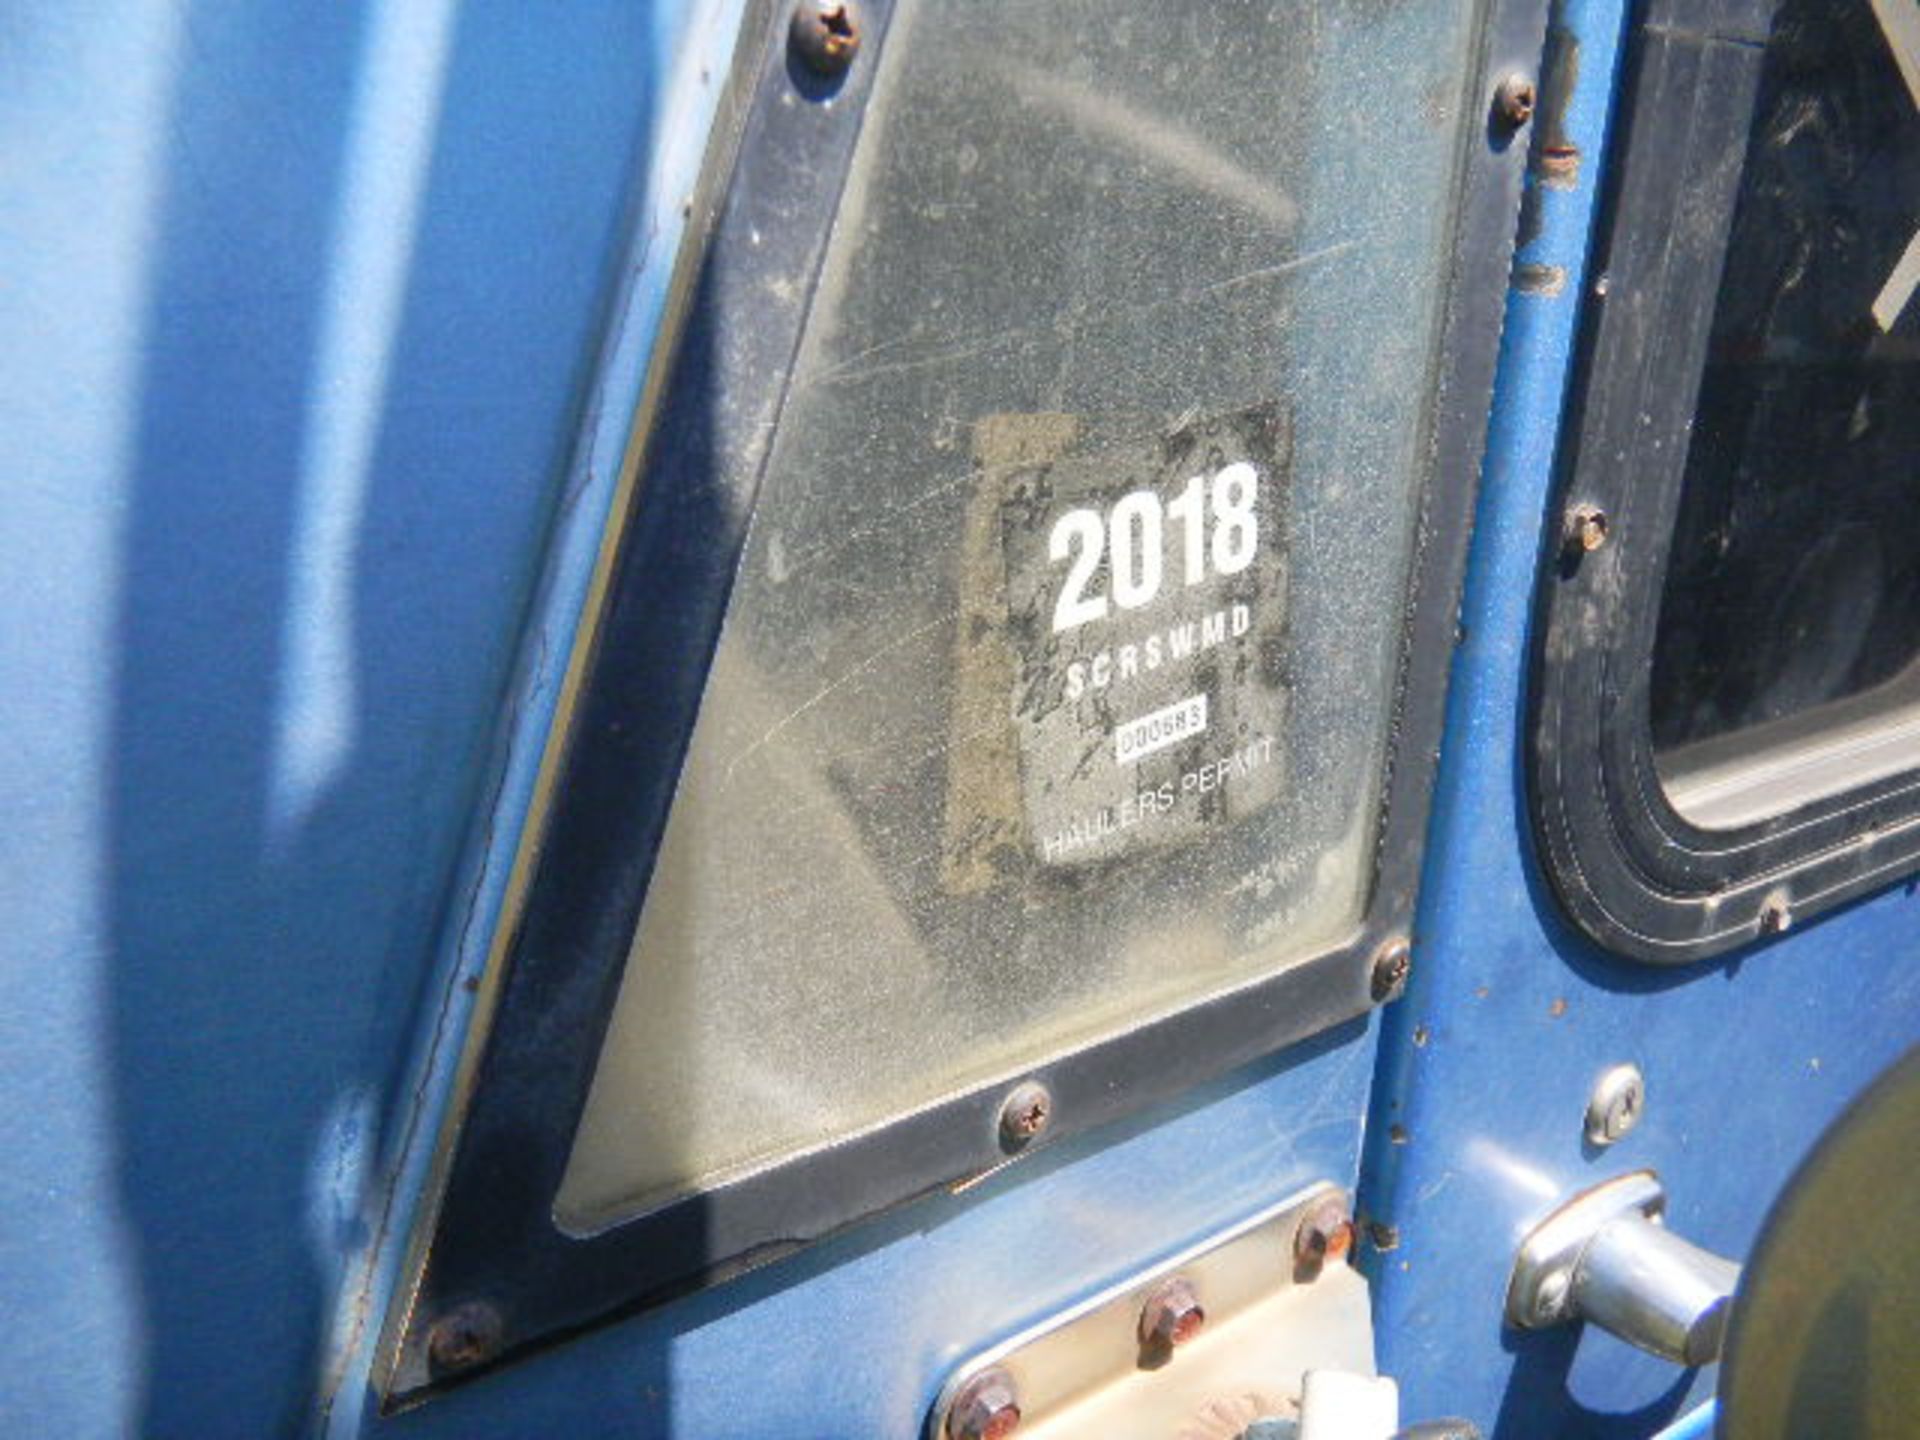 2002 Crane Carrier, (18) Yd Rear Loading Sanitation Truck - I.D. #43 - Last of Vin (045741) #43 - Image 6 of 11